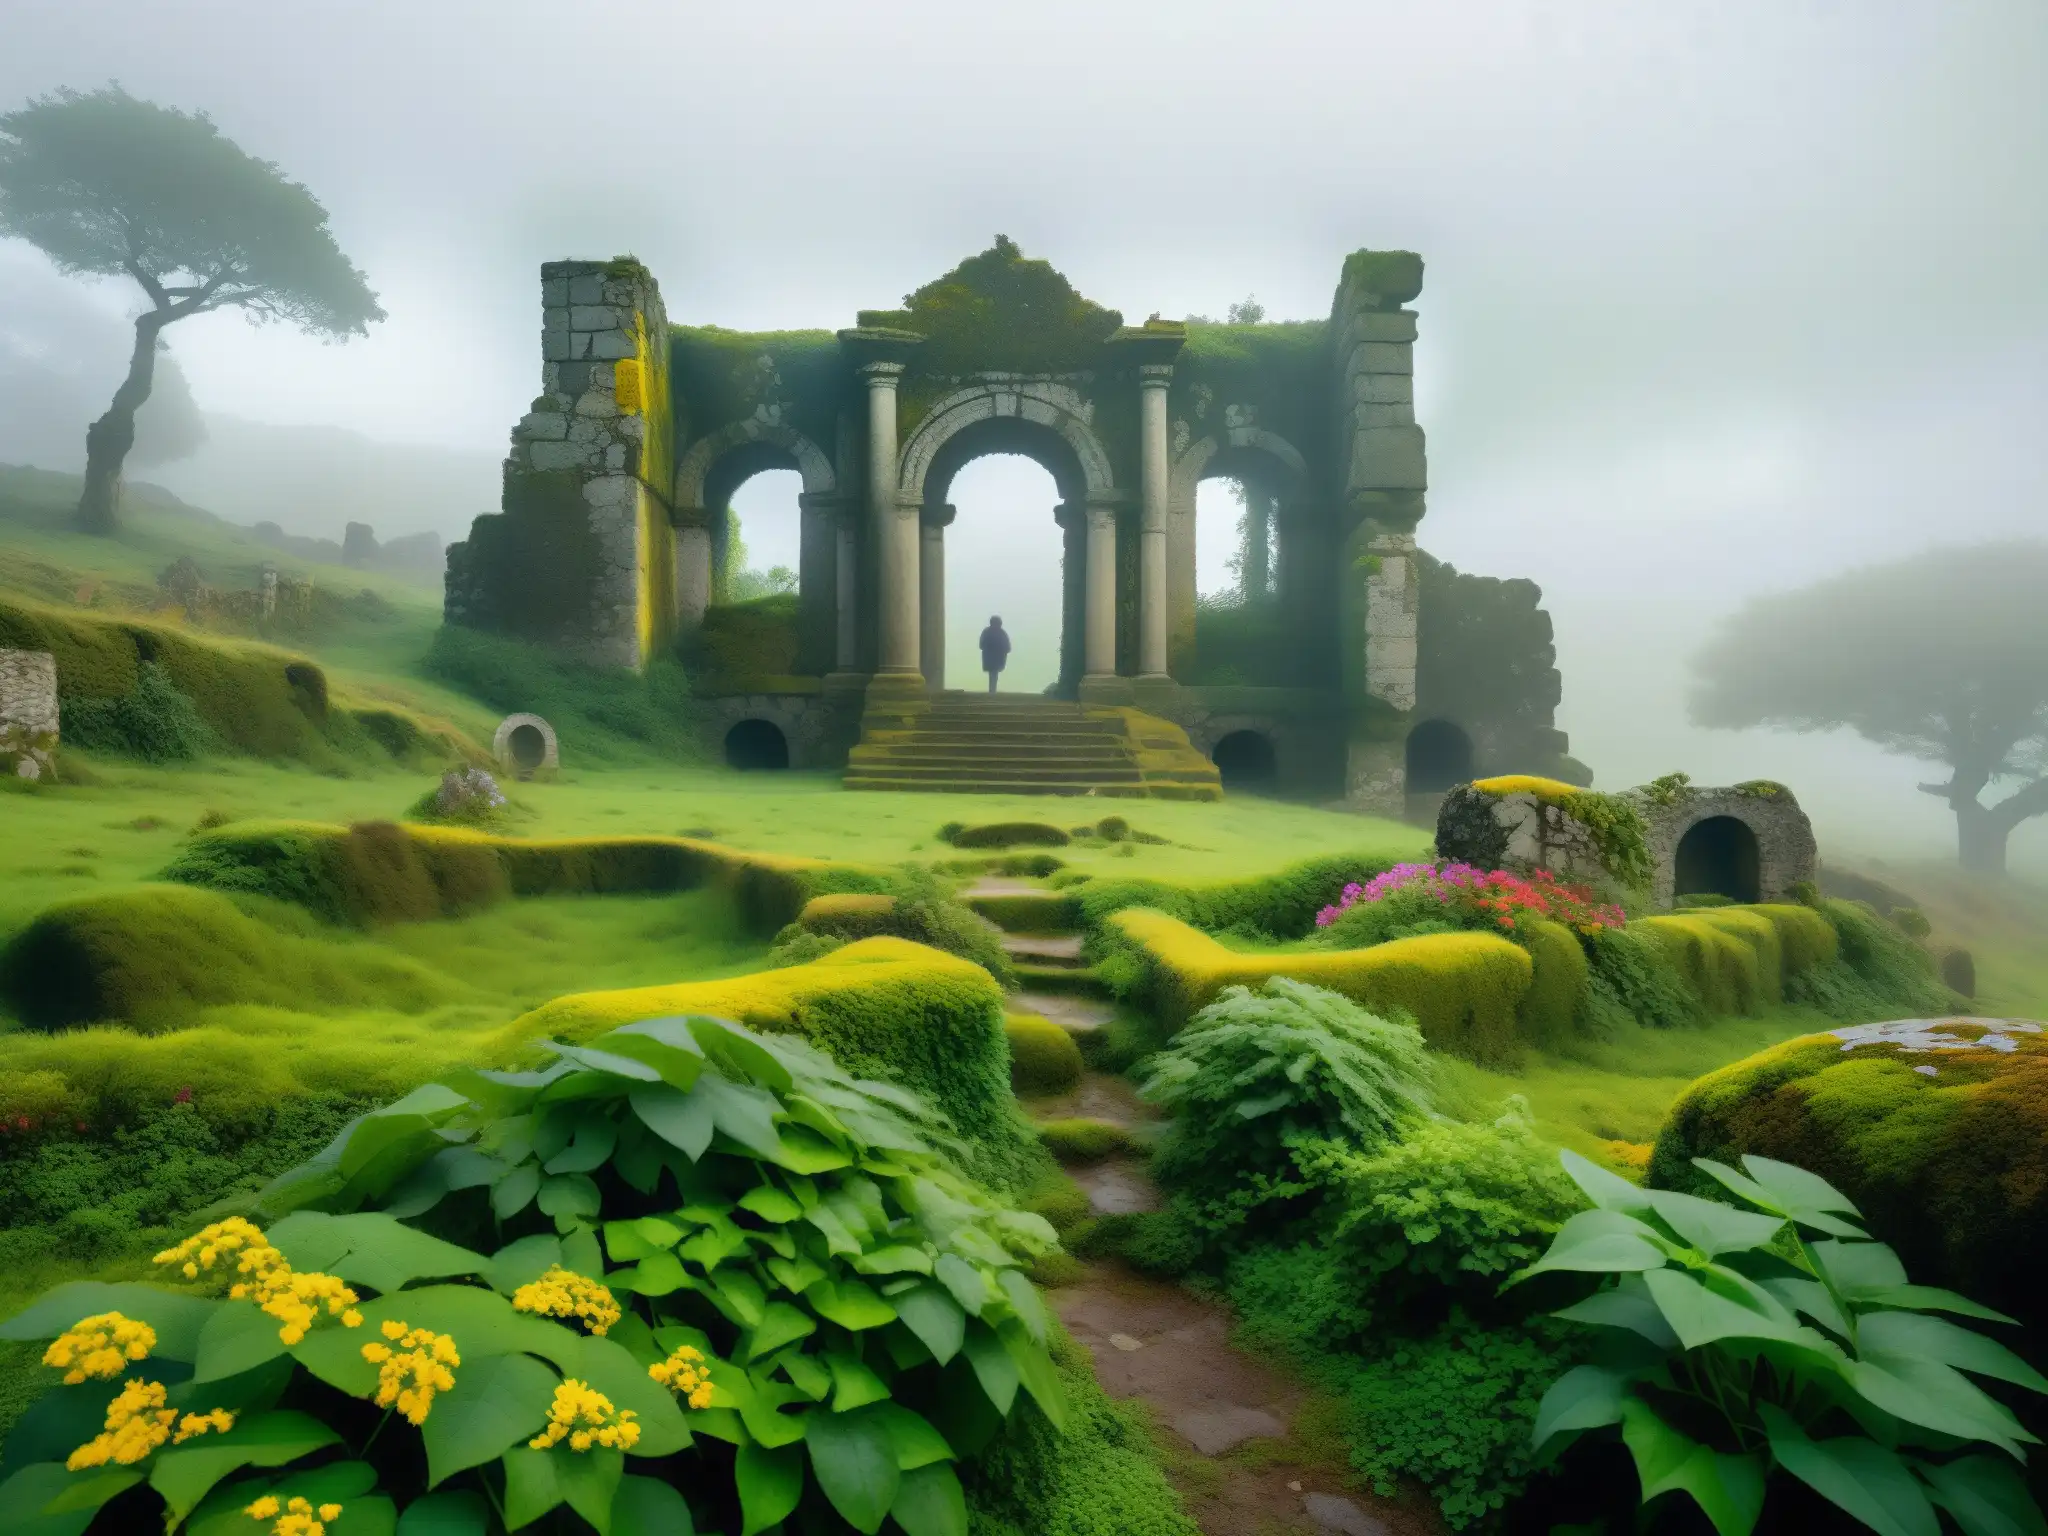 Ruinas celtas cubiertas de musgo en un bosque neblinoso en Portugal, rodeadas de vegetación exuberante y flores silvestres